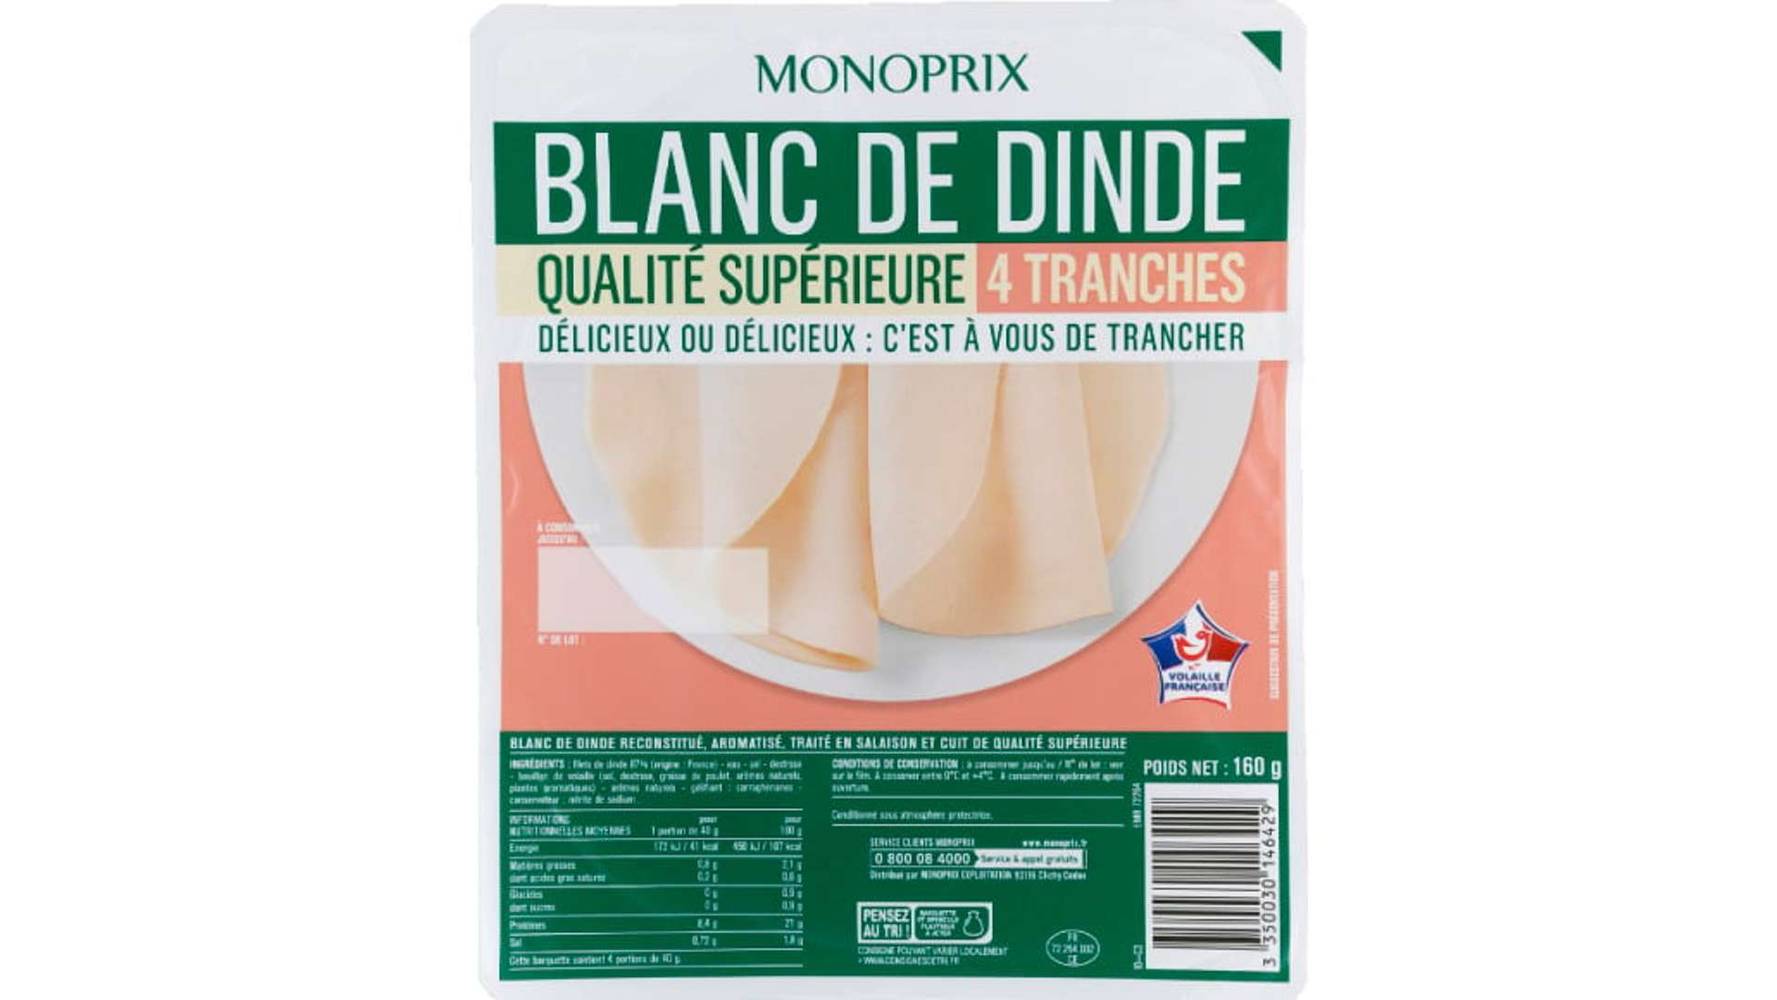 Monoprix Blanc de dinde La barquette de 4 tranches, 160g